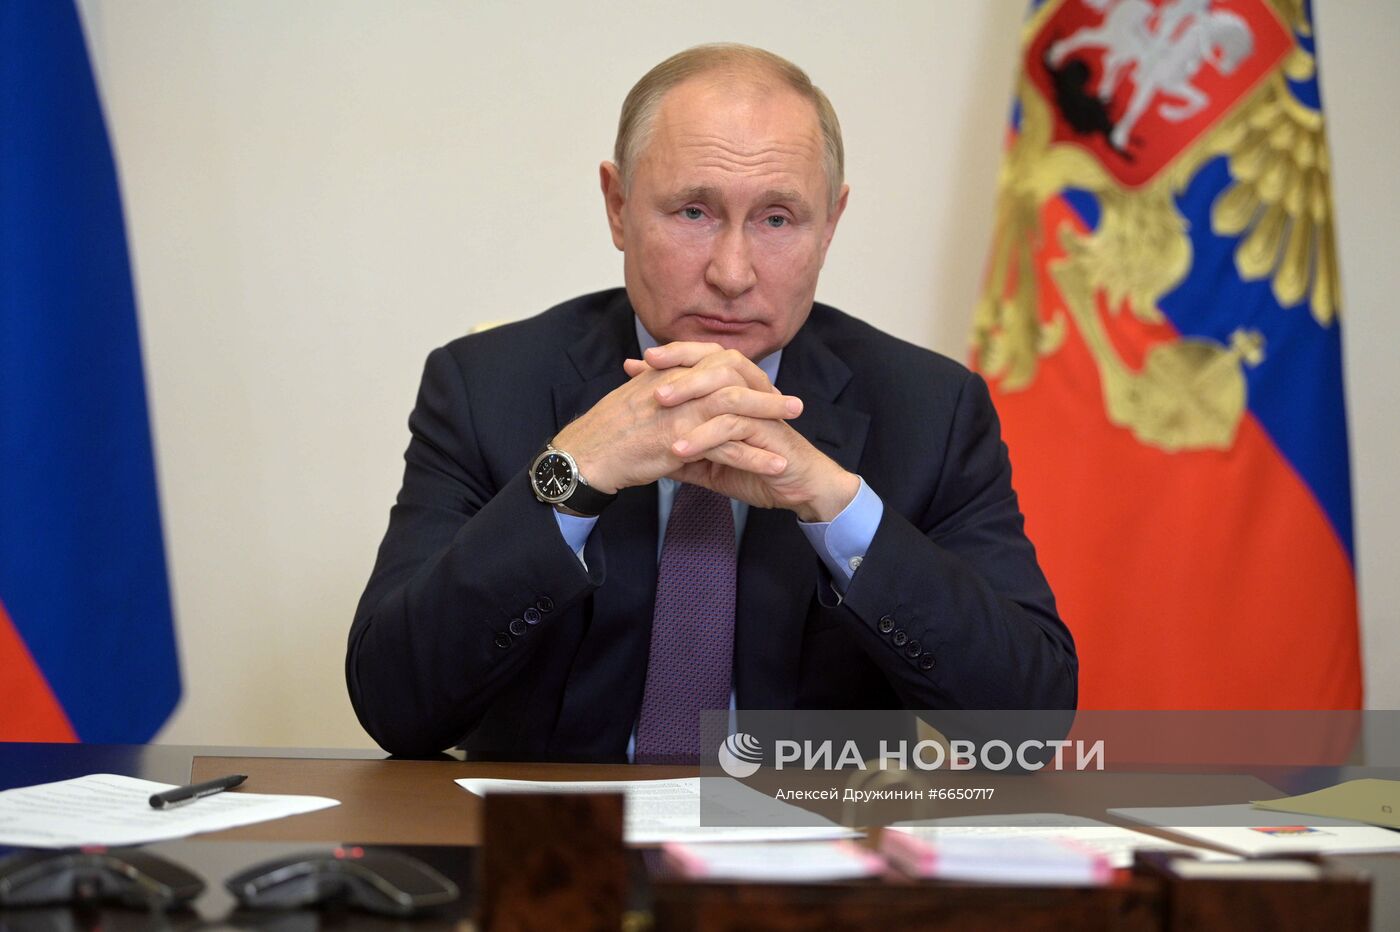 Президент РФ В. Путин провел совещание с членами правительства РФ и руководством партии "Единая Россия"